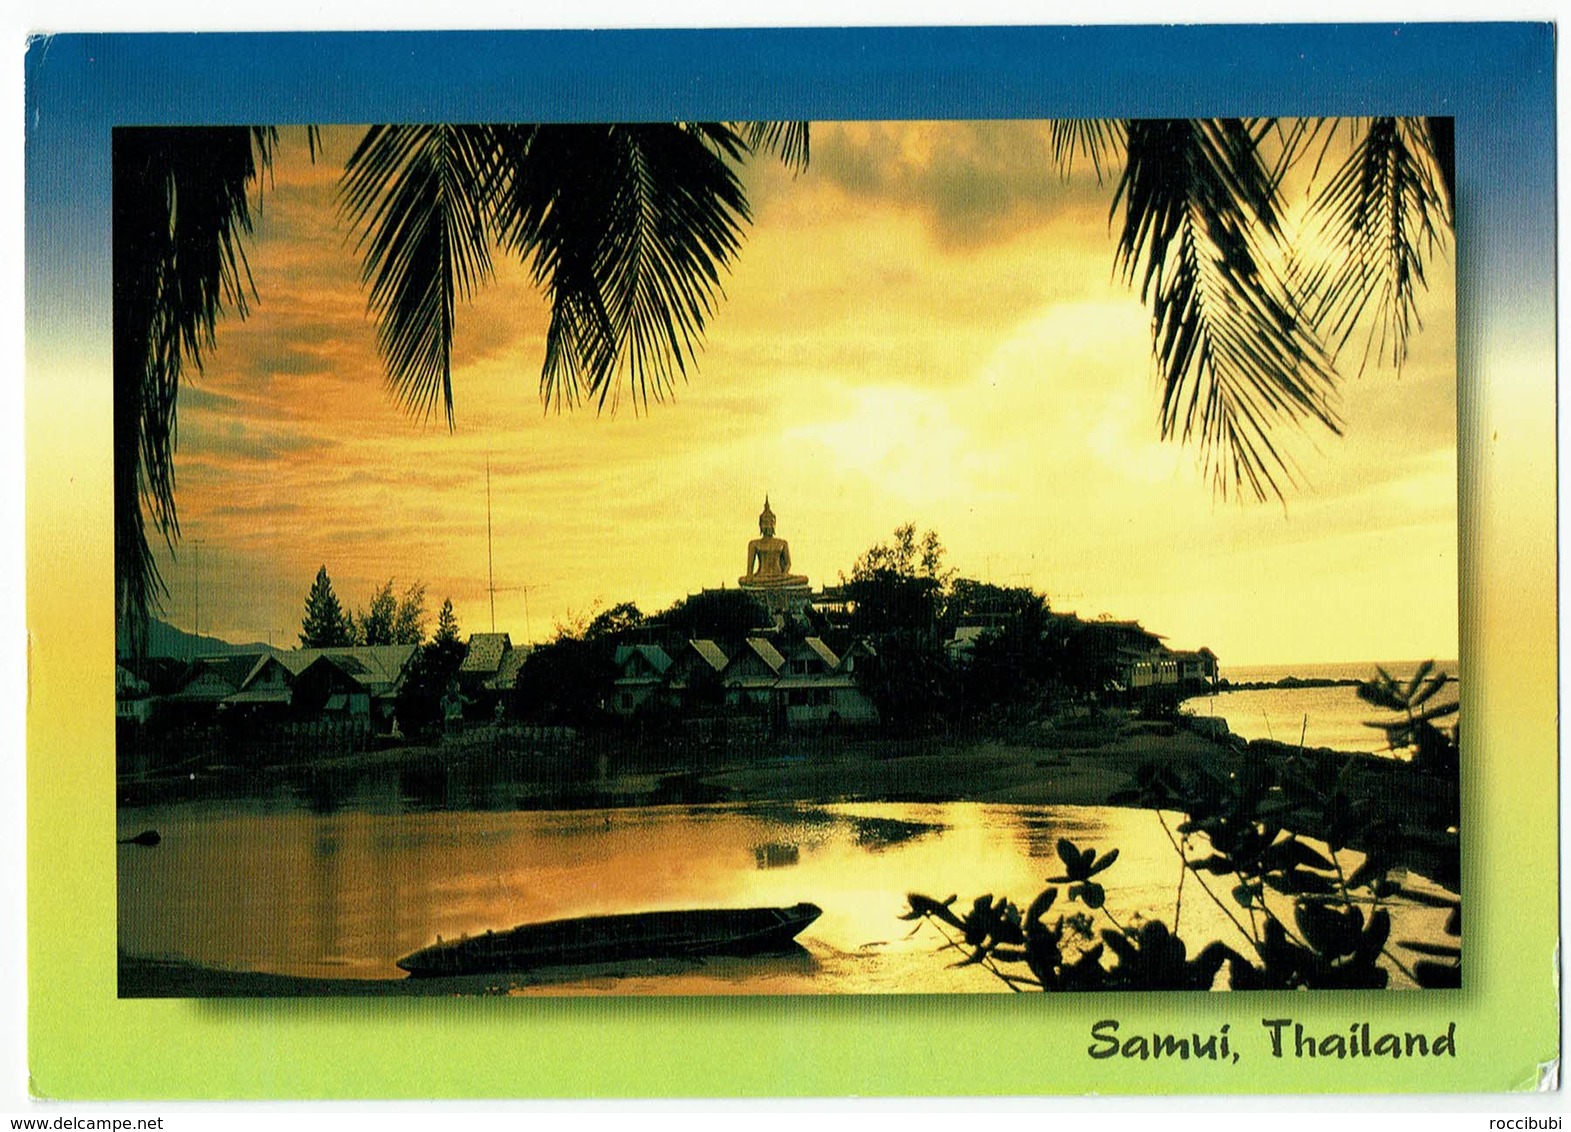 Thailand, Samui - Thaïland